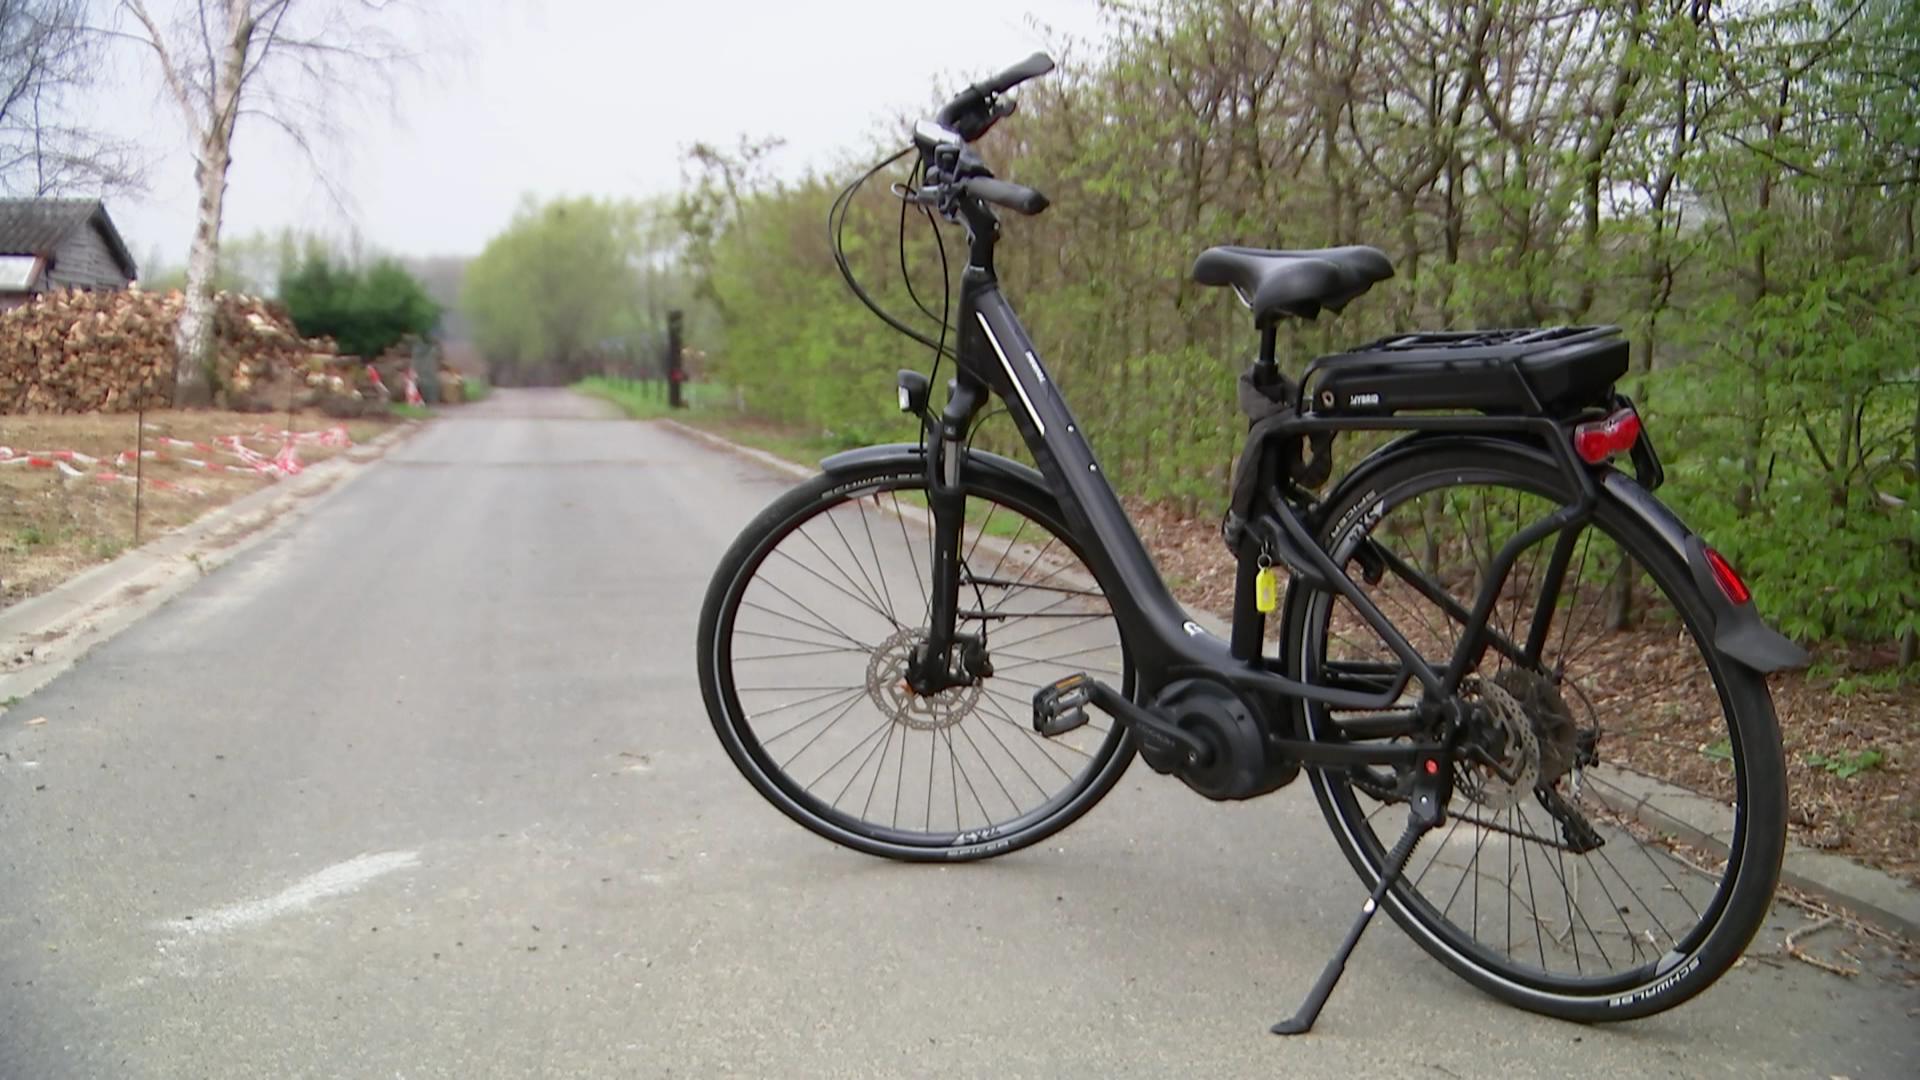 Mart mesh solide Illegaal opdrijven van elektrische fietsen is wijdverspreid: "Ik kan hem  voor u tot 70 km/u laten rijden" | VRT NWS: nieuws